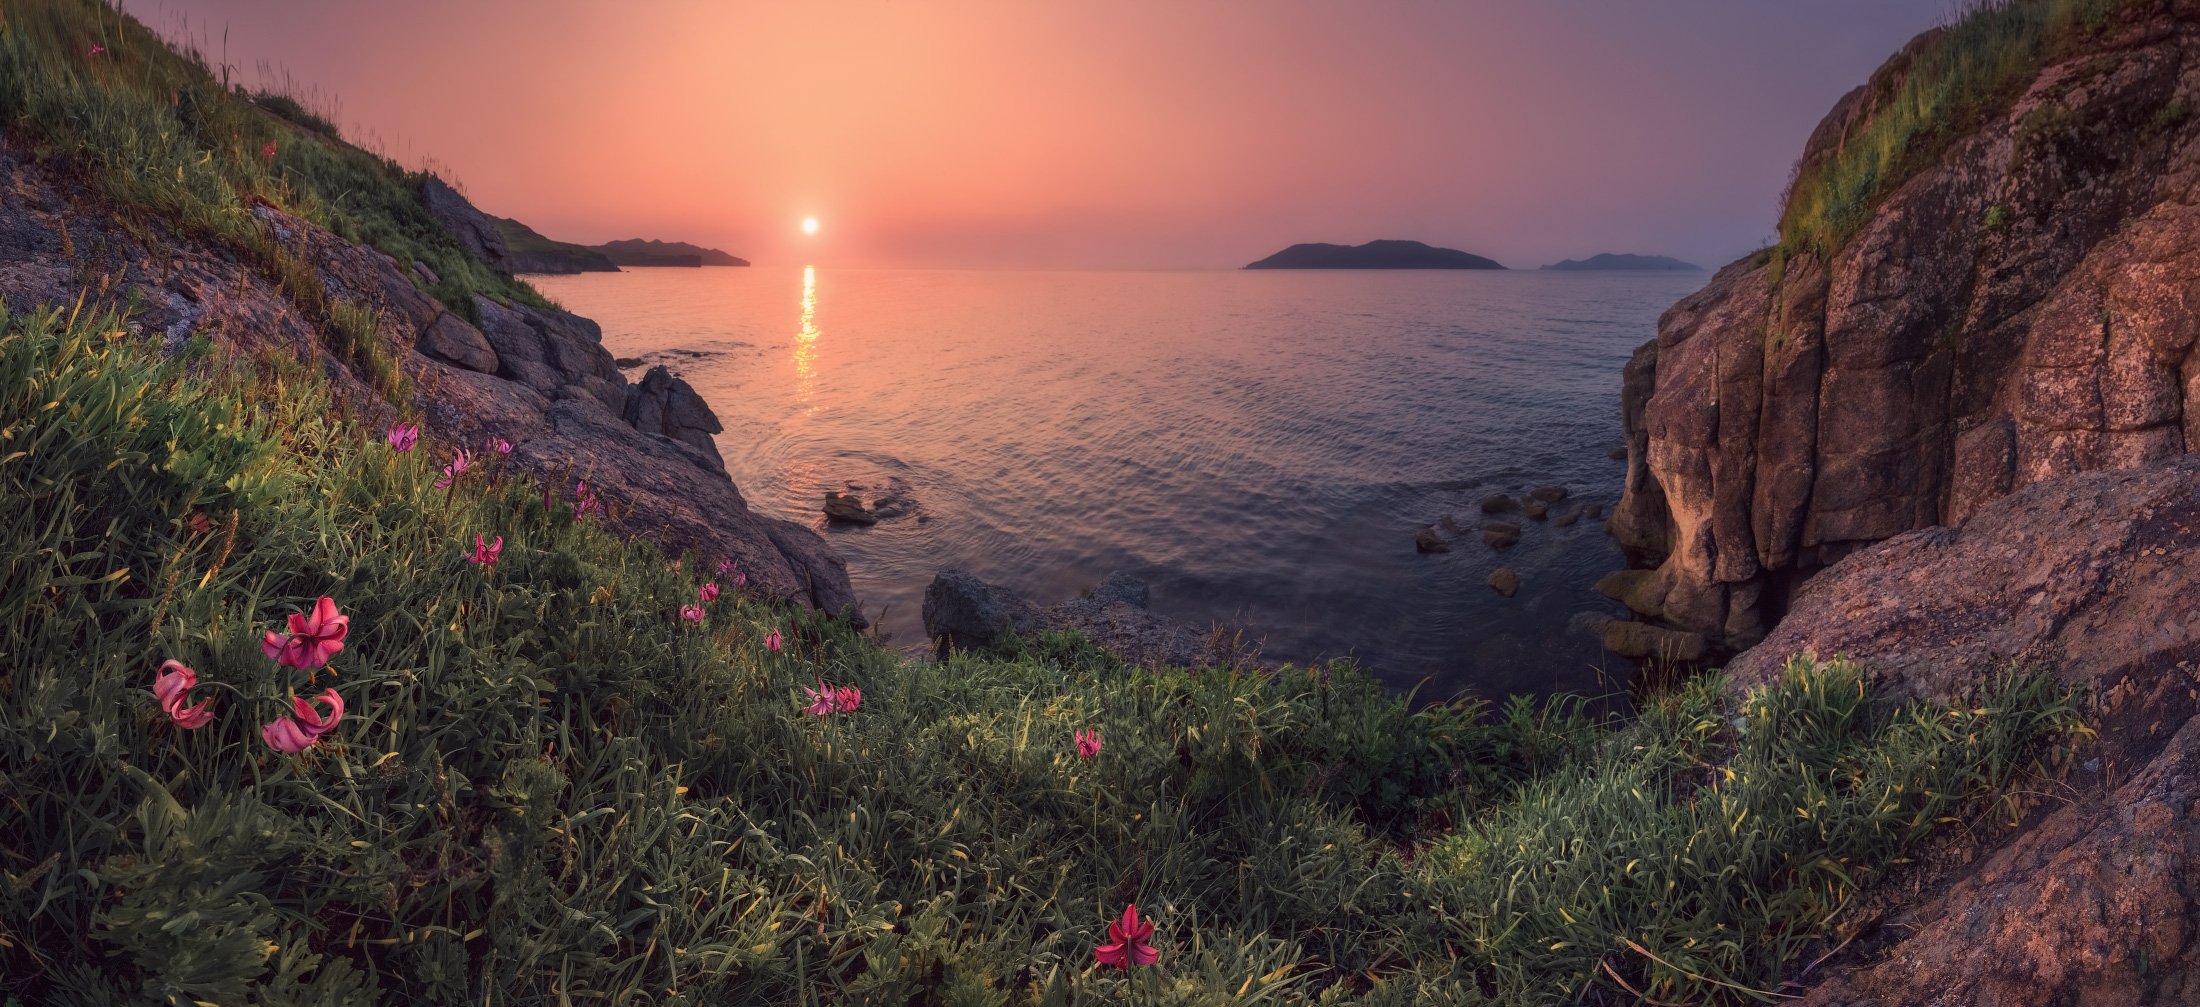 панорама, утро, море, восход, скалы, цветы, Андрей Кровлин